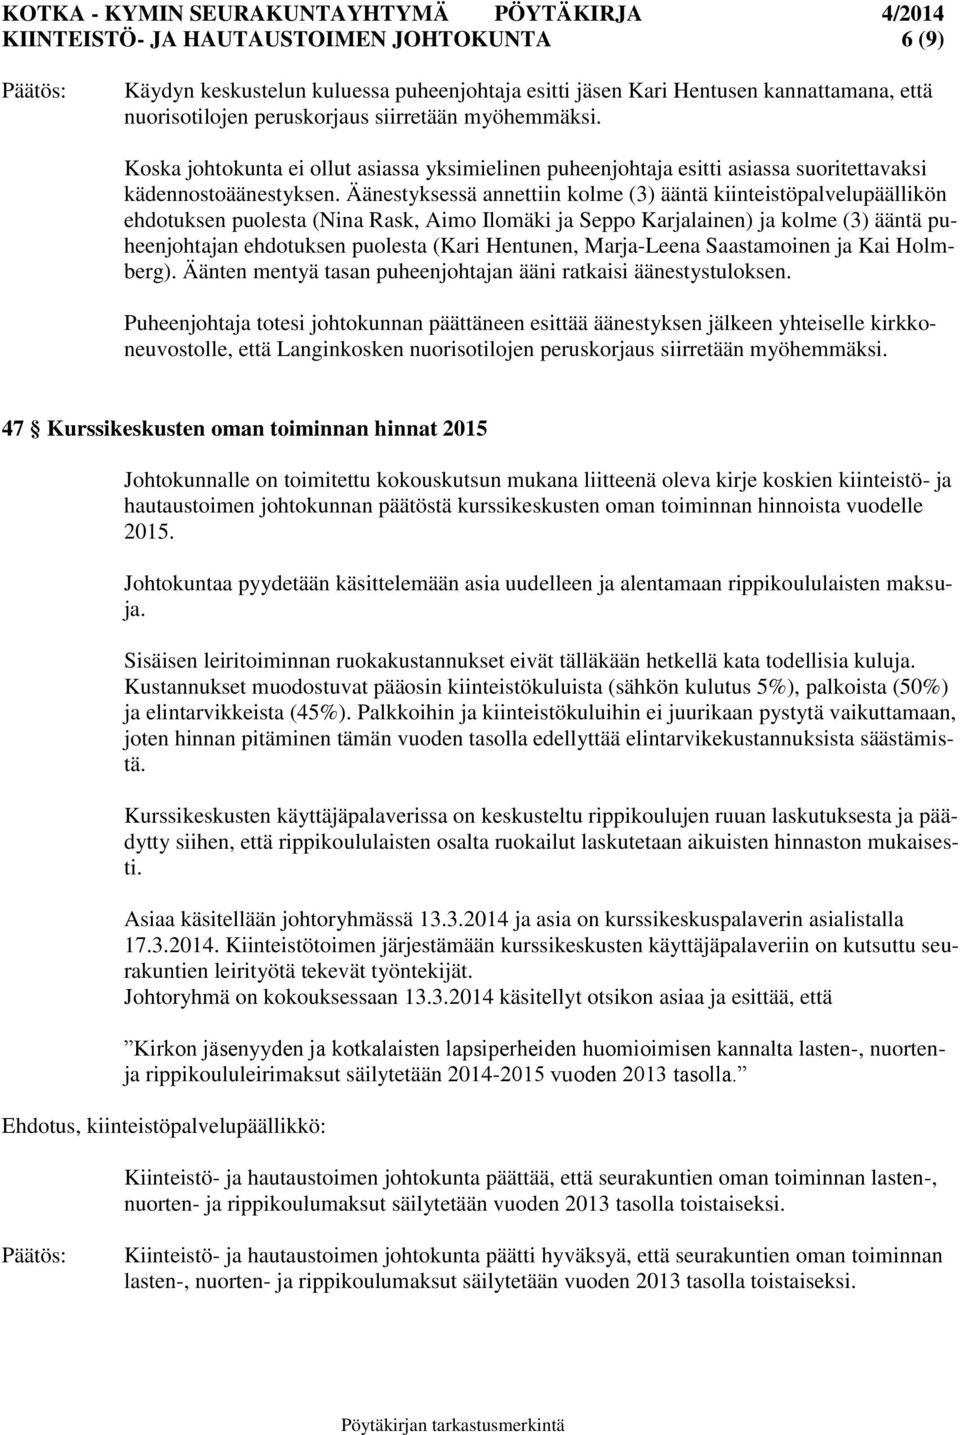 Äänestyksessä annettiin kolme (3) ääntä kiinteistöpalvelupäällikön ehdotuksen puolesta (Nina Rask, Aimo Ilomäki ja Seppo Karjalainen) ja kolme (3) ääntä puheenjohtajan ehdotuksen puolesta (Kari